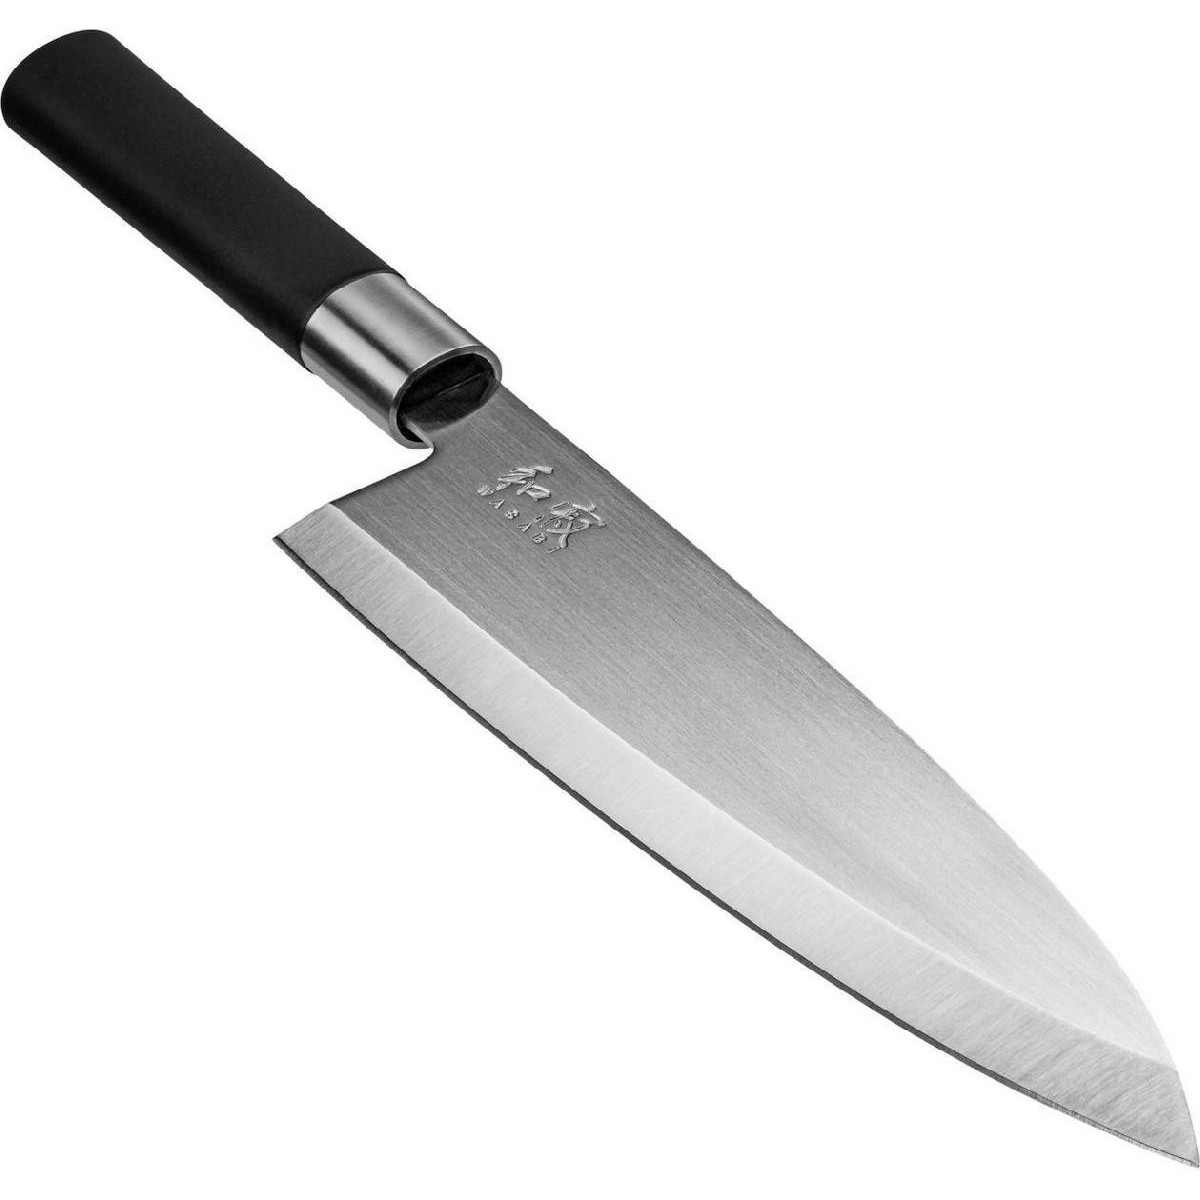 Kai KAI Wasabi Deba knife black 21cm ( KAI WA6721D)